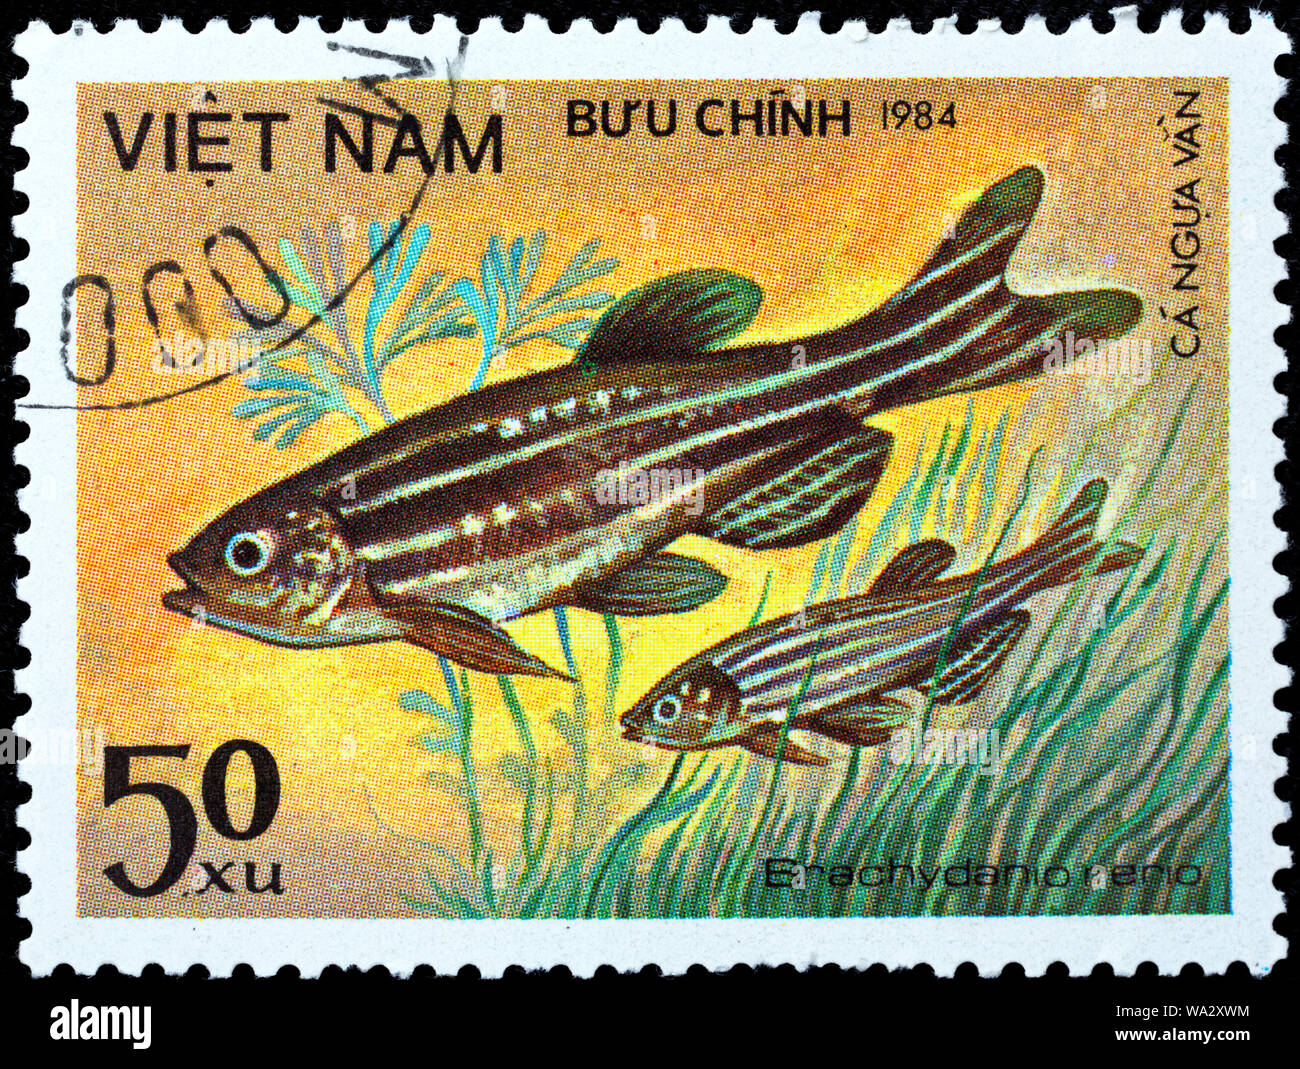 Danio rerio, BRACHYDANIO RERIO, Zebrafisch, Briefmarke, Vietnam, 1984 Stockfoto